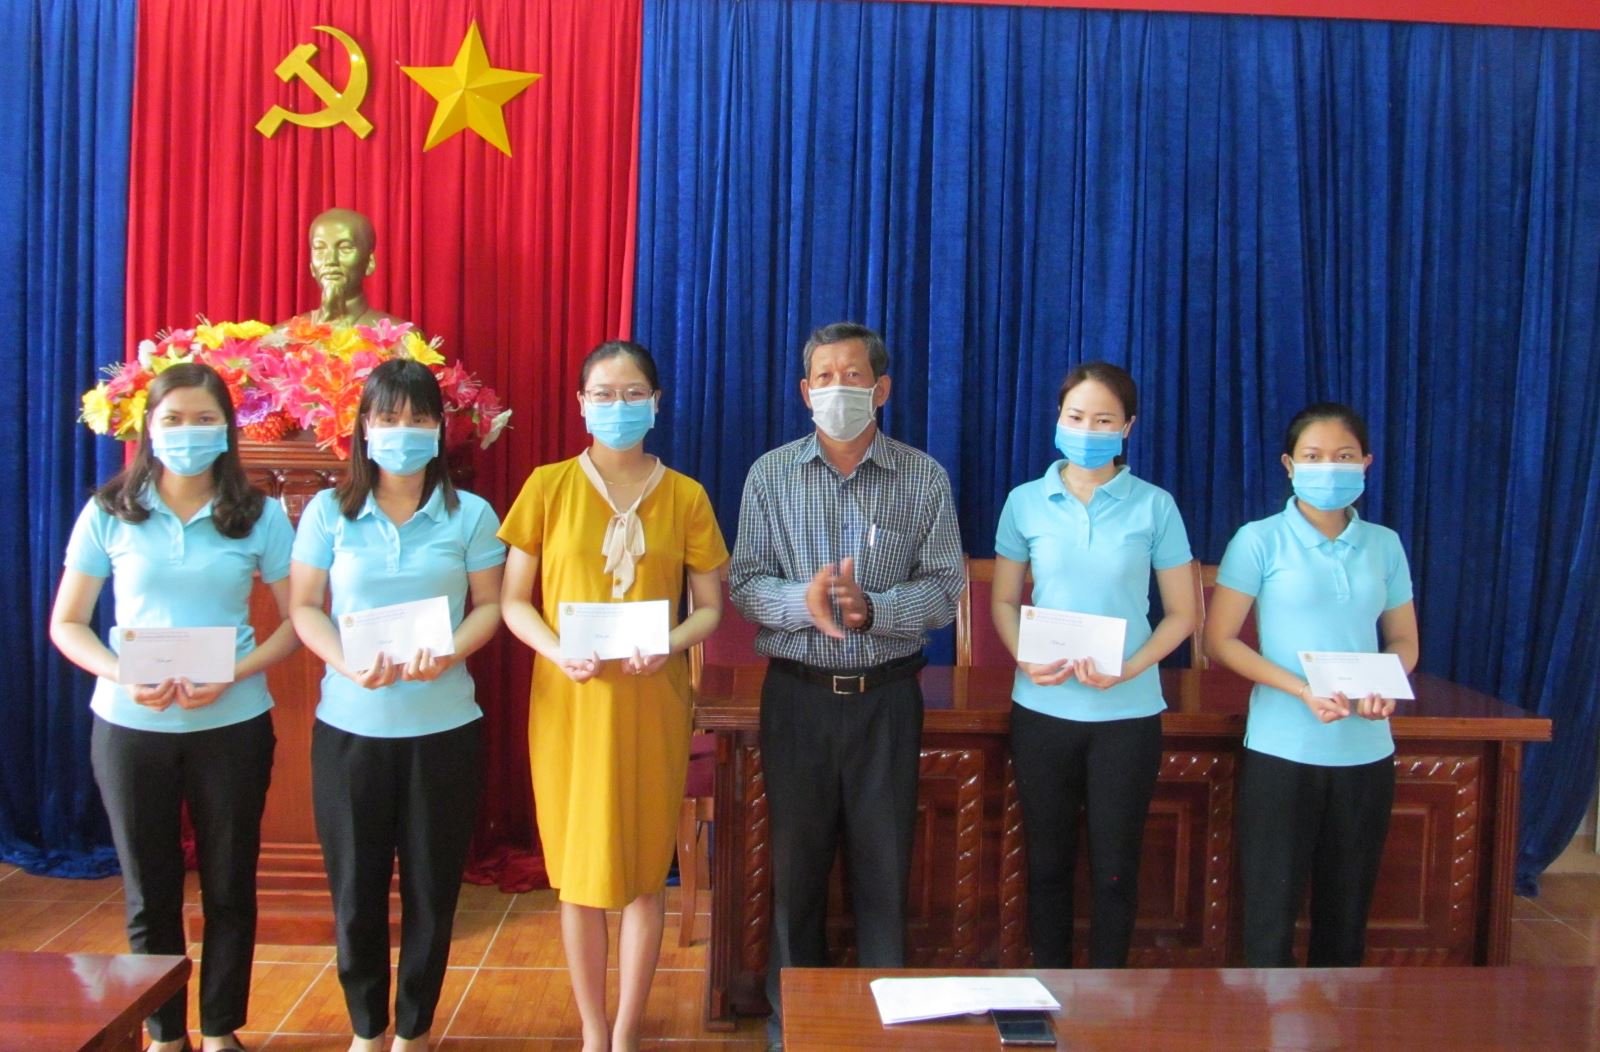 LĐLĐ tỉnh Kon Tum thăm hỏi, trao tiền hỗ trợ cho đoàn viên bị ảnh hưởng  bởi dịch Covid-19 trên địa bàn huyện Đắk Hà và Ngọc Hồi.